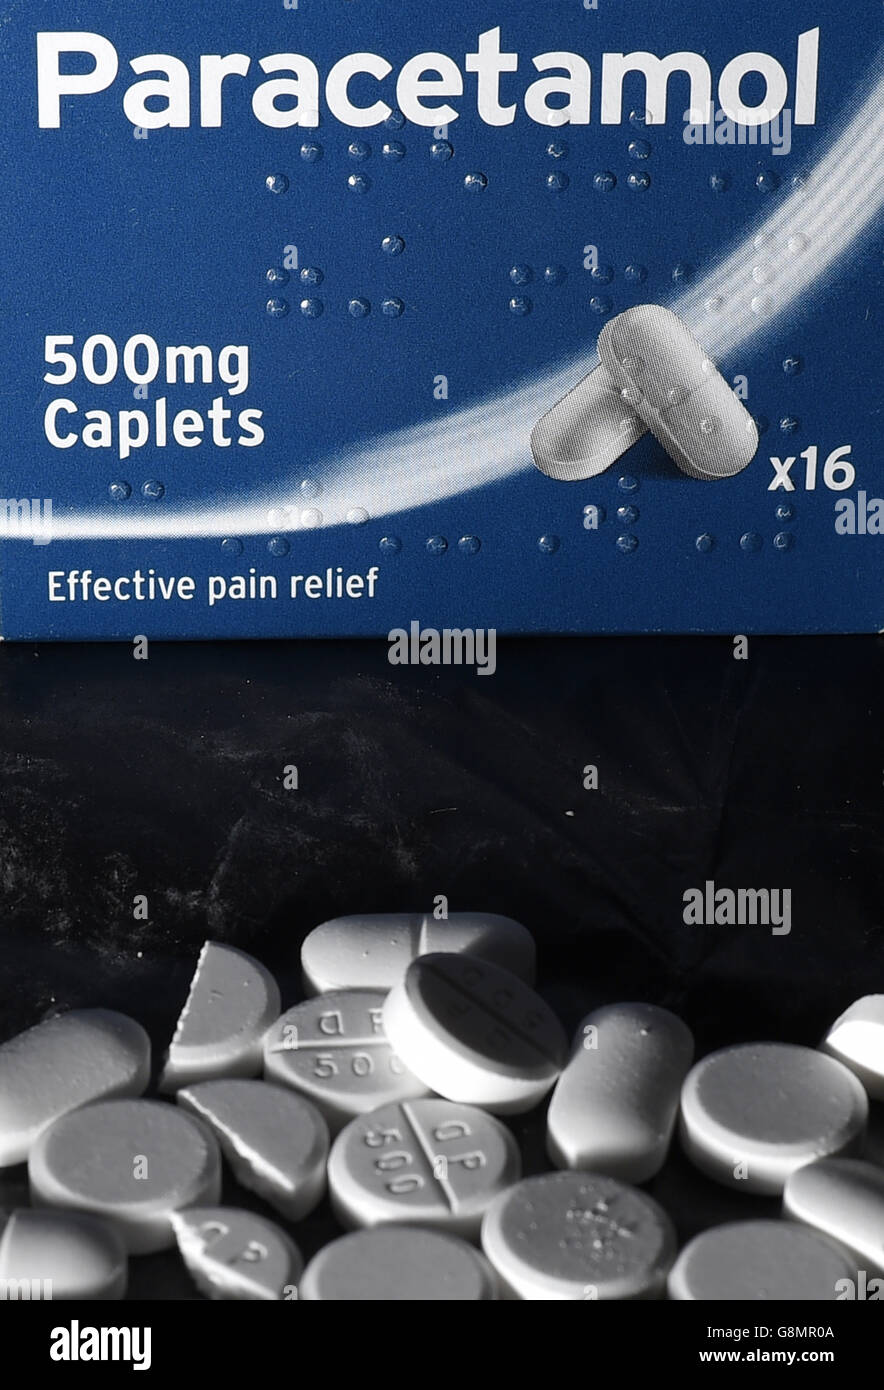 Pain killer stock. Stock photo of Paracetamol tablets. Stock Photo